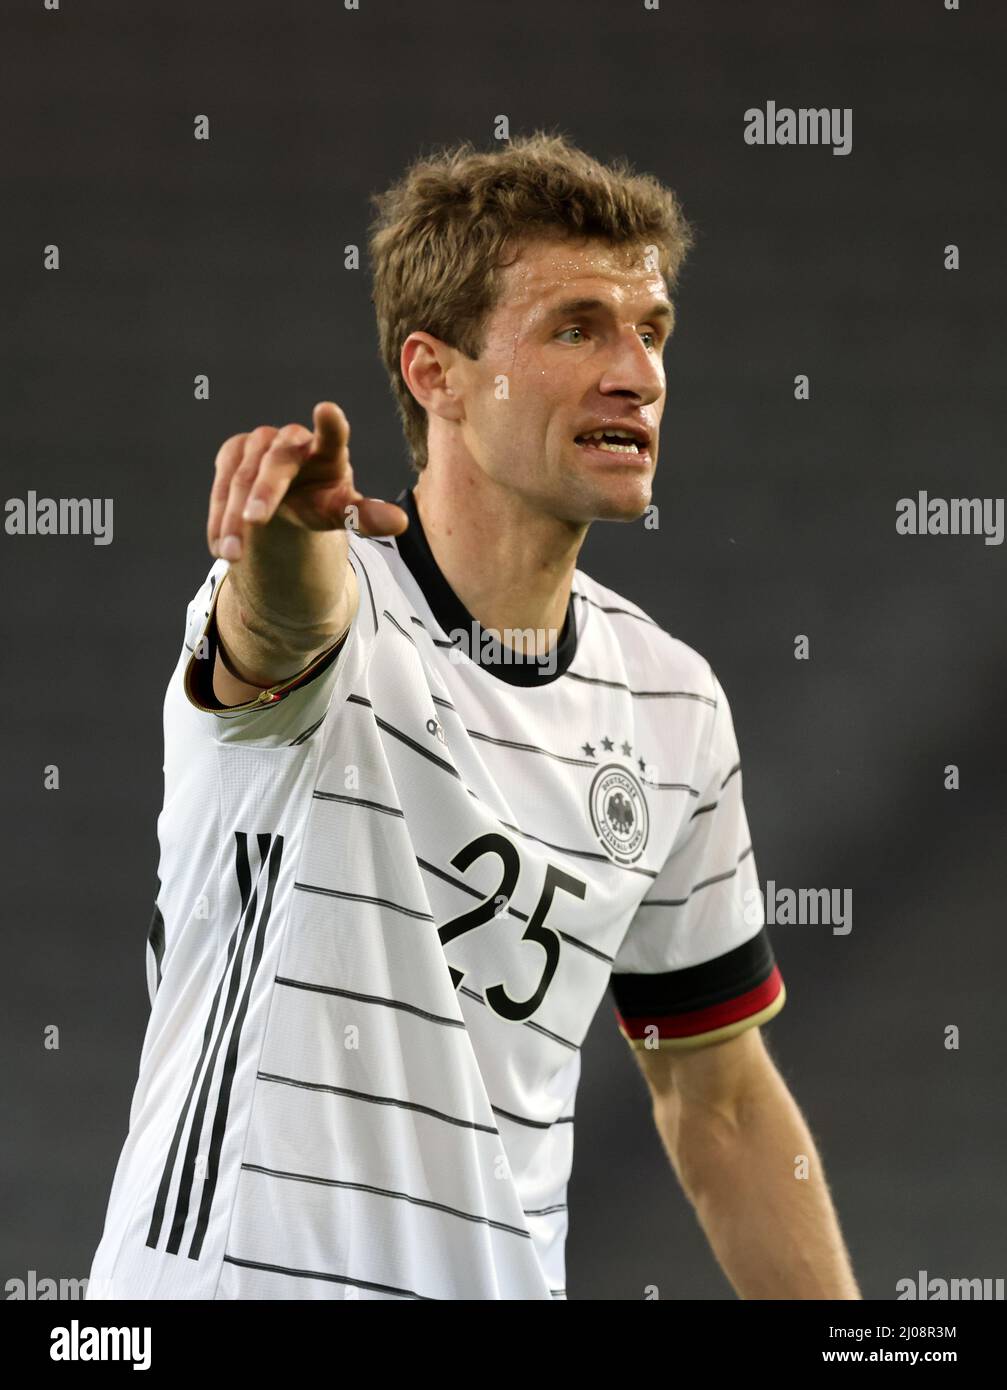 Thomas MŸller  Fussball LŠnderspiel Deutschland - DŠnemark  © diebilderwelt / Alamy Stock Stock Photo